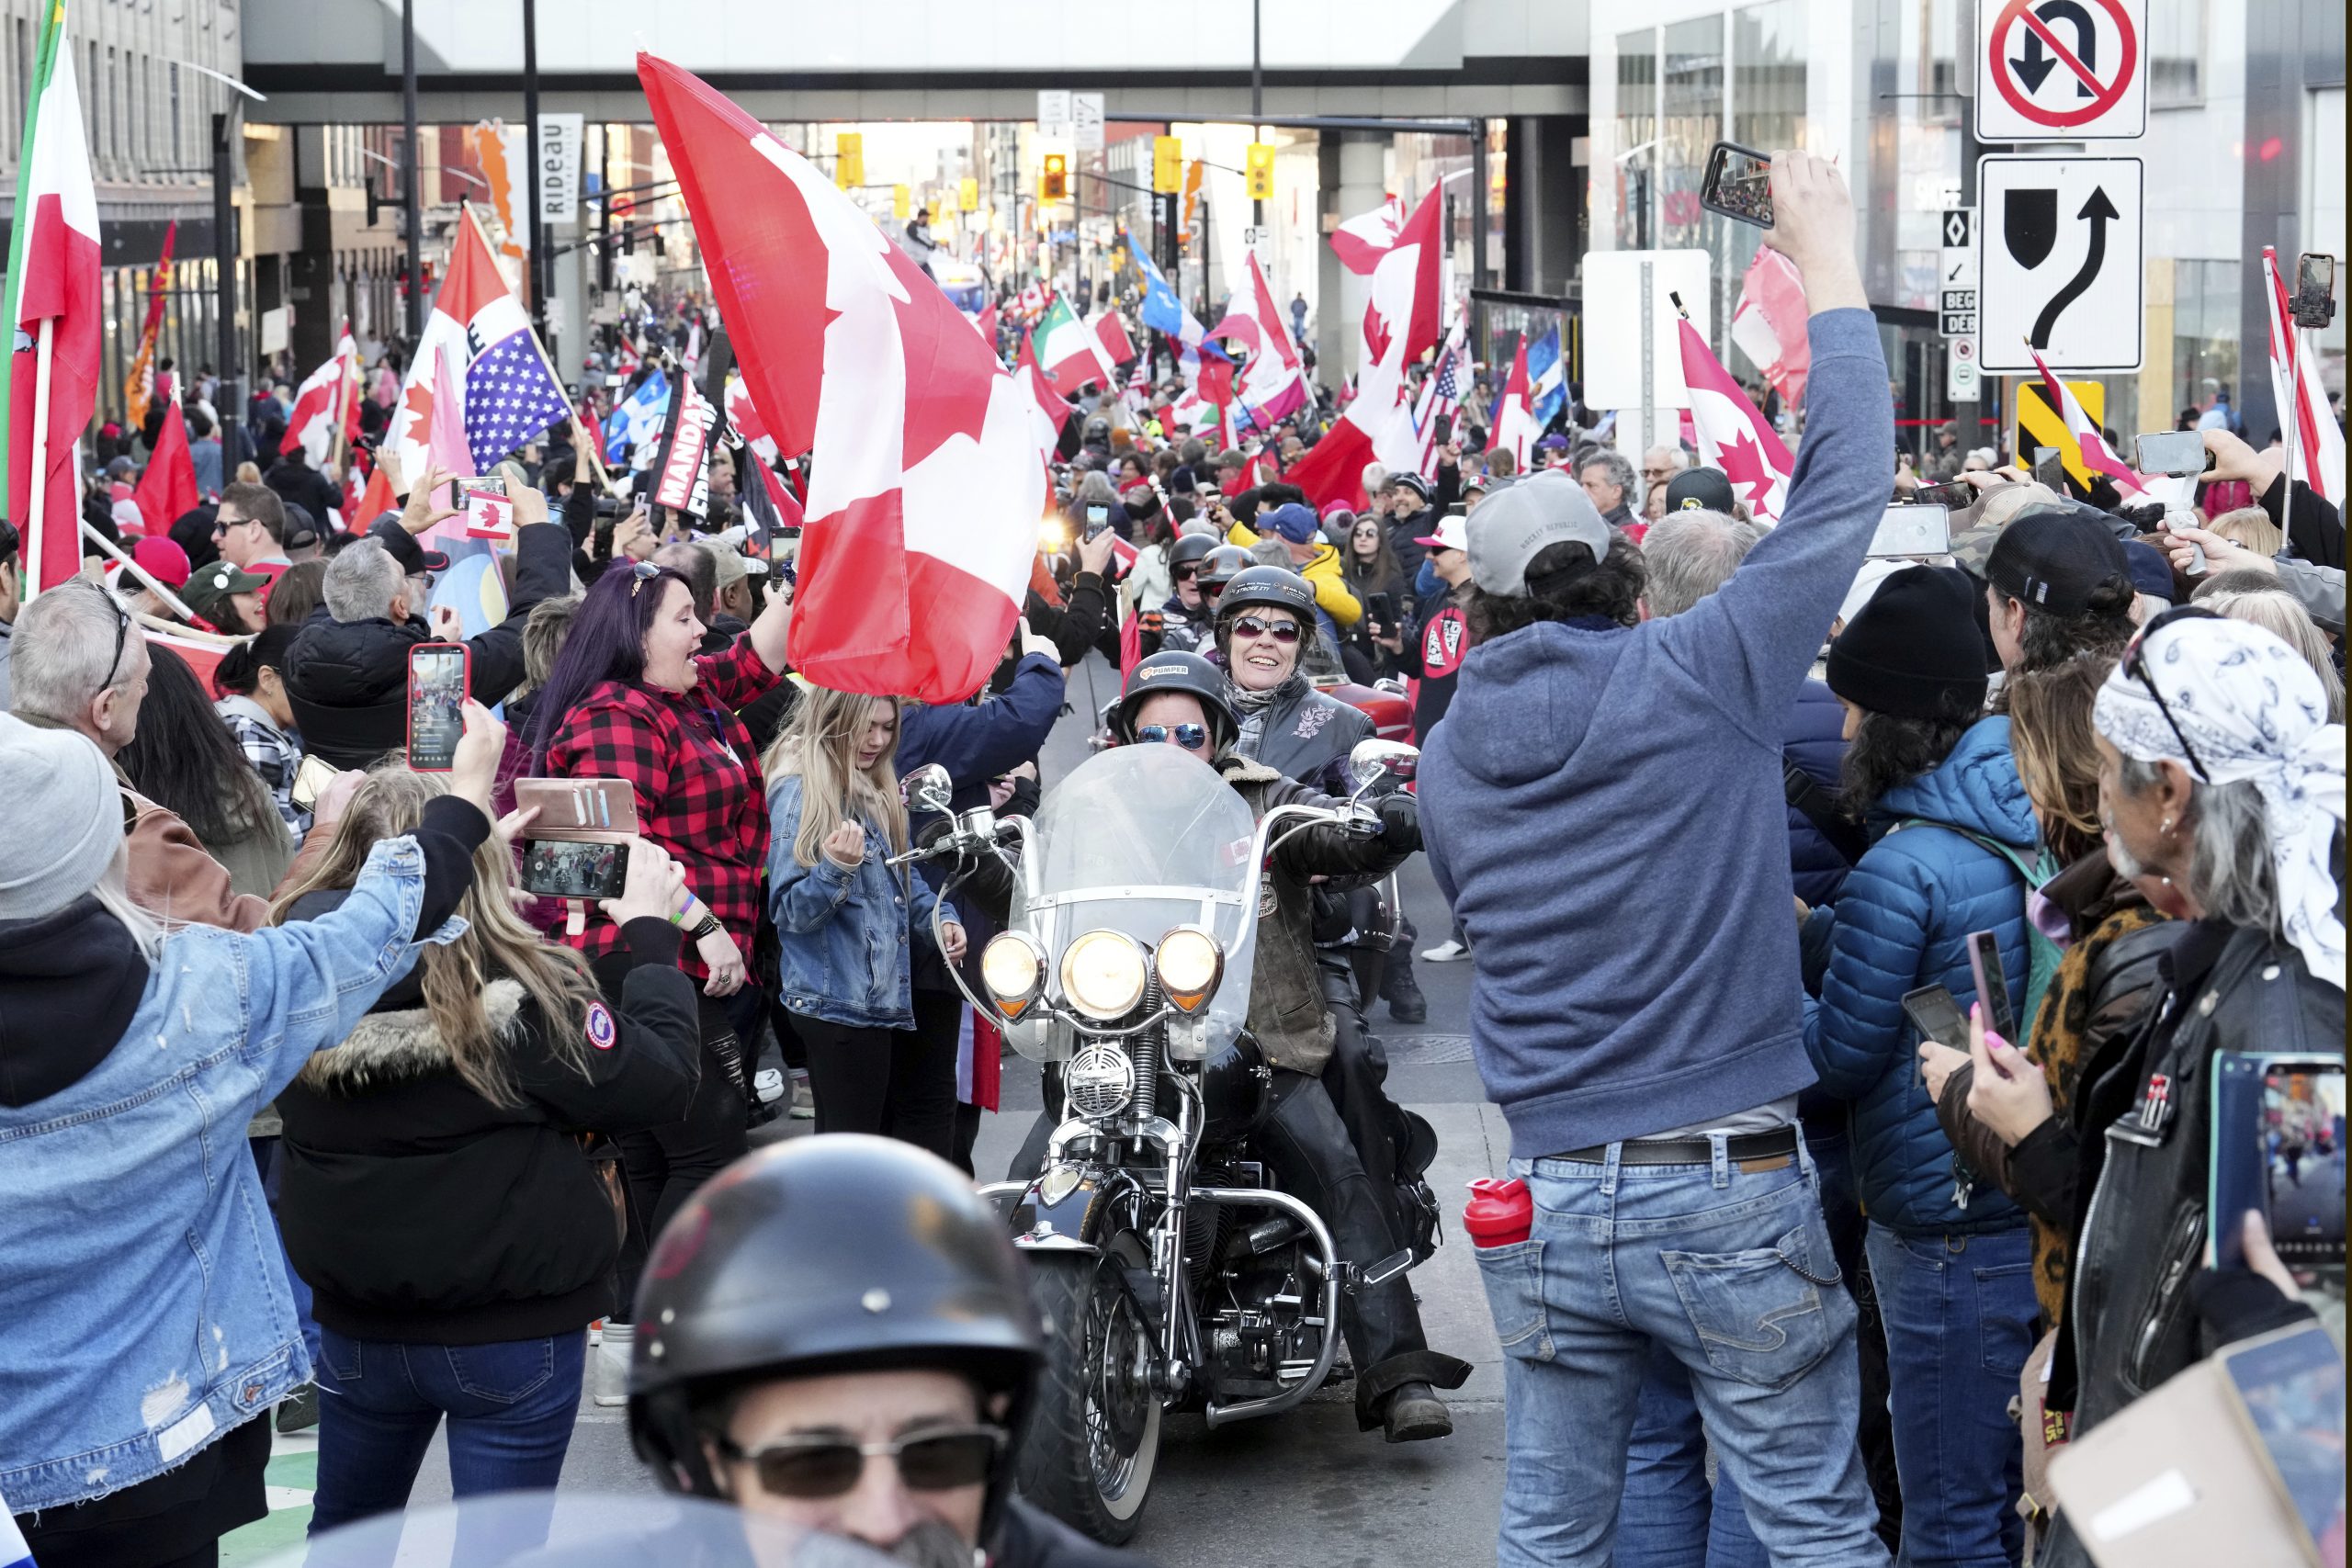 渥太华再现车队示威游行 抗议政府权力过度扩张